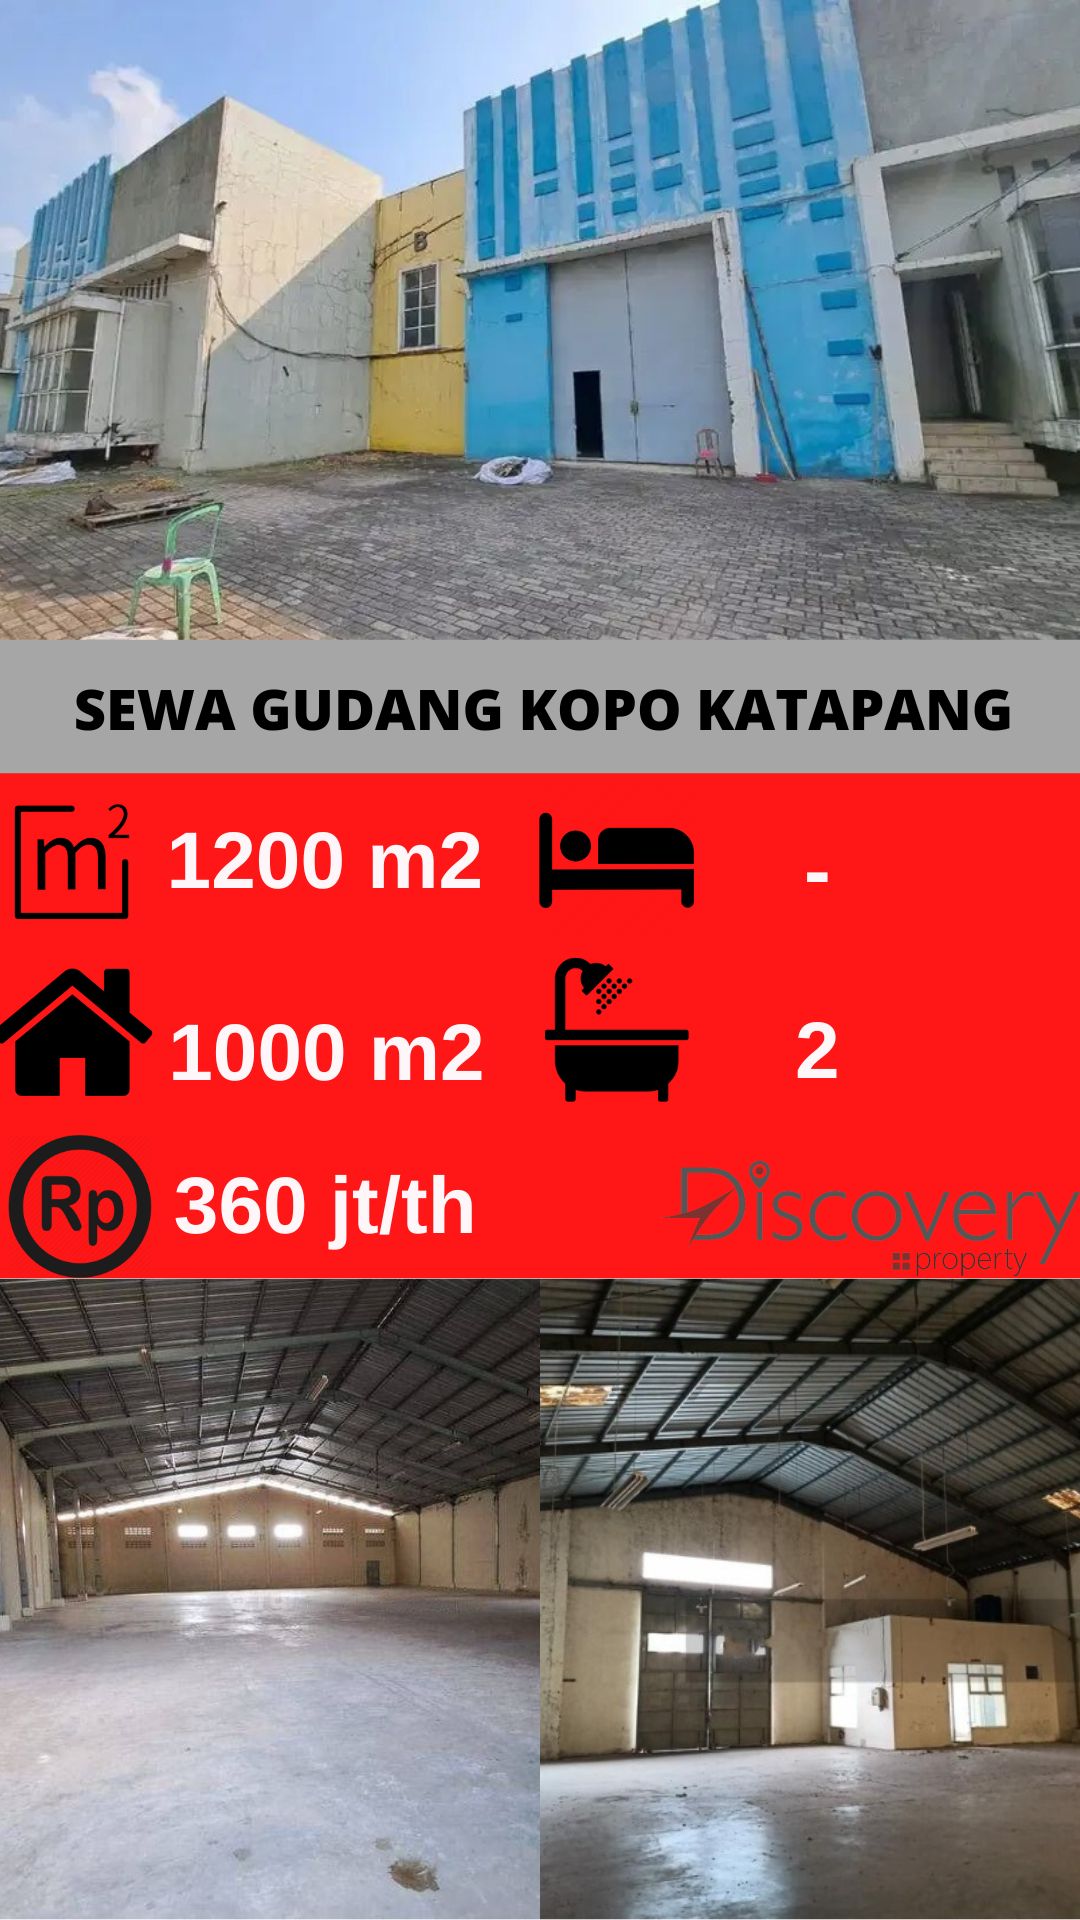 Sewa Gudang Kopo Katapang Bandung